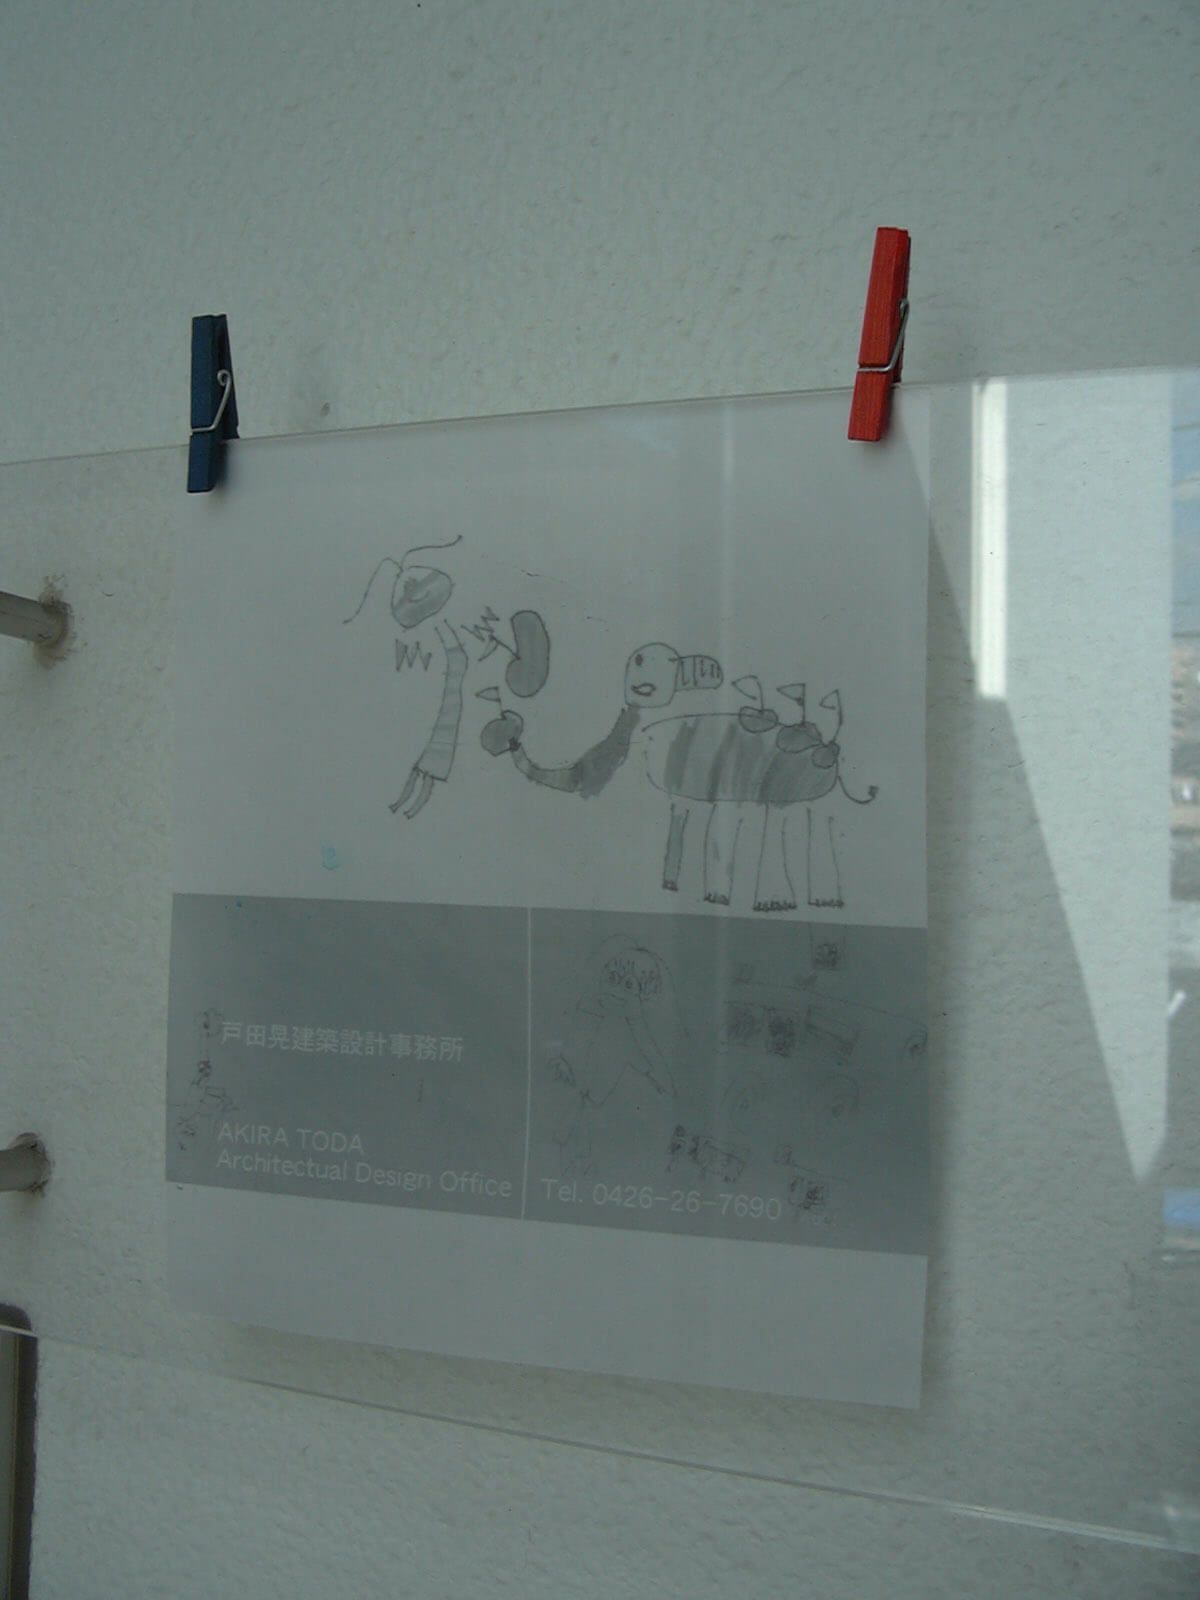 透明の板に洗濯バサミで取り付けられた、白い紙に子供のイラストと電話番号が書かれている戸田晃建築設計事務所の看板